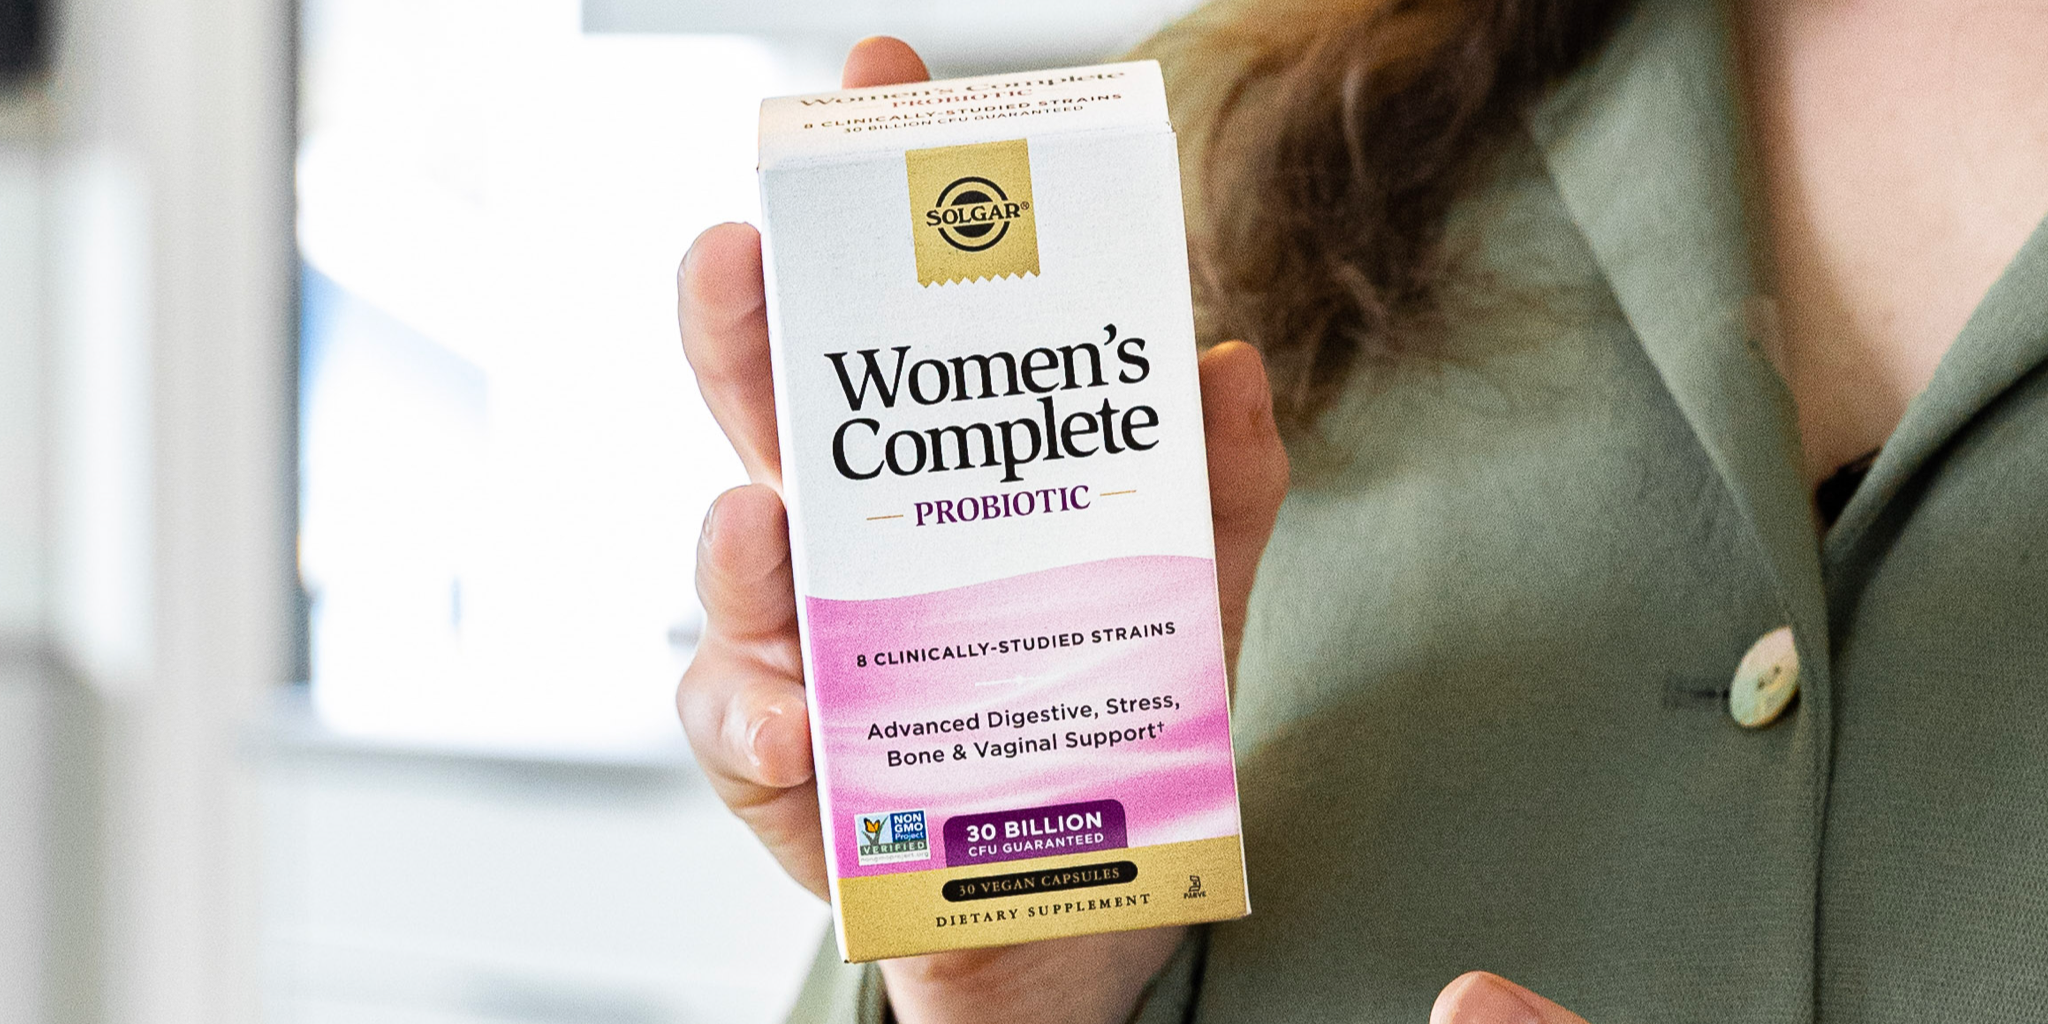 Solgar® Women's Complete Probiotic